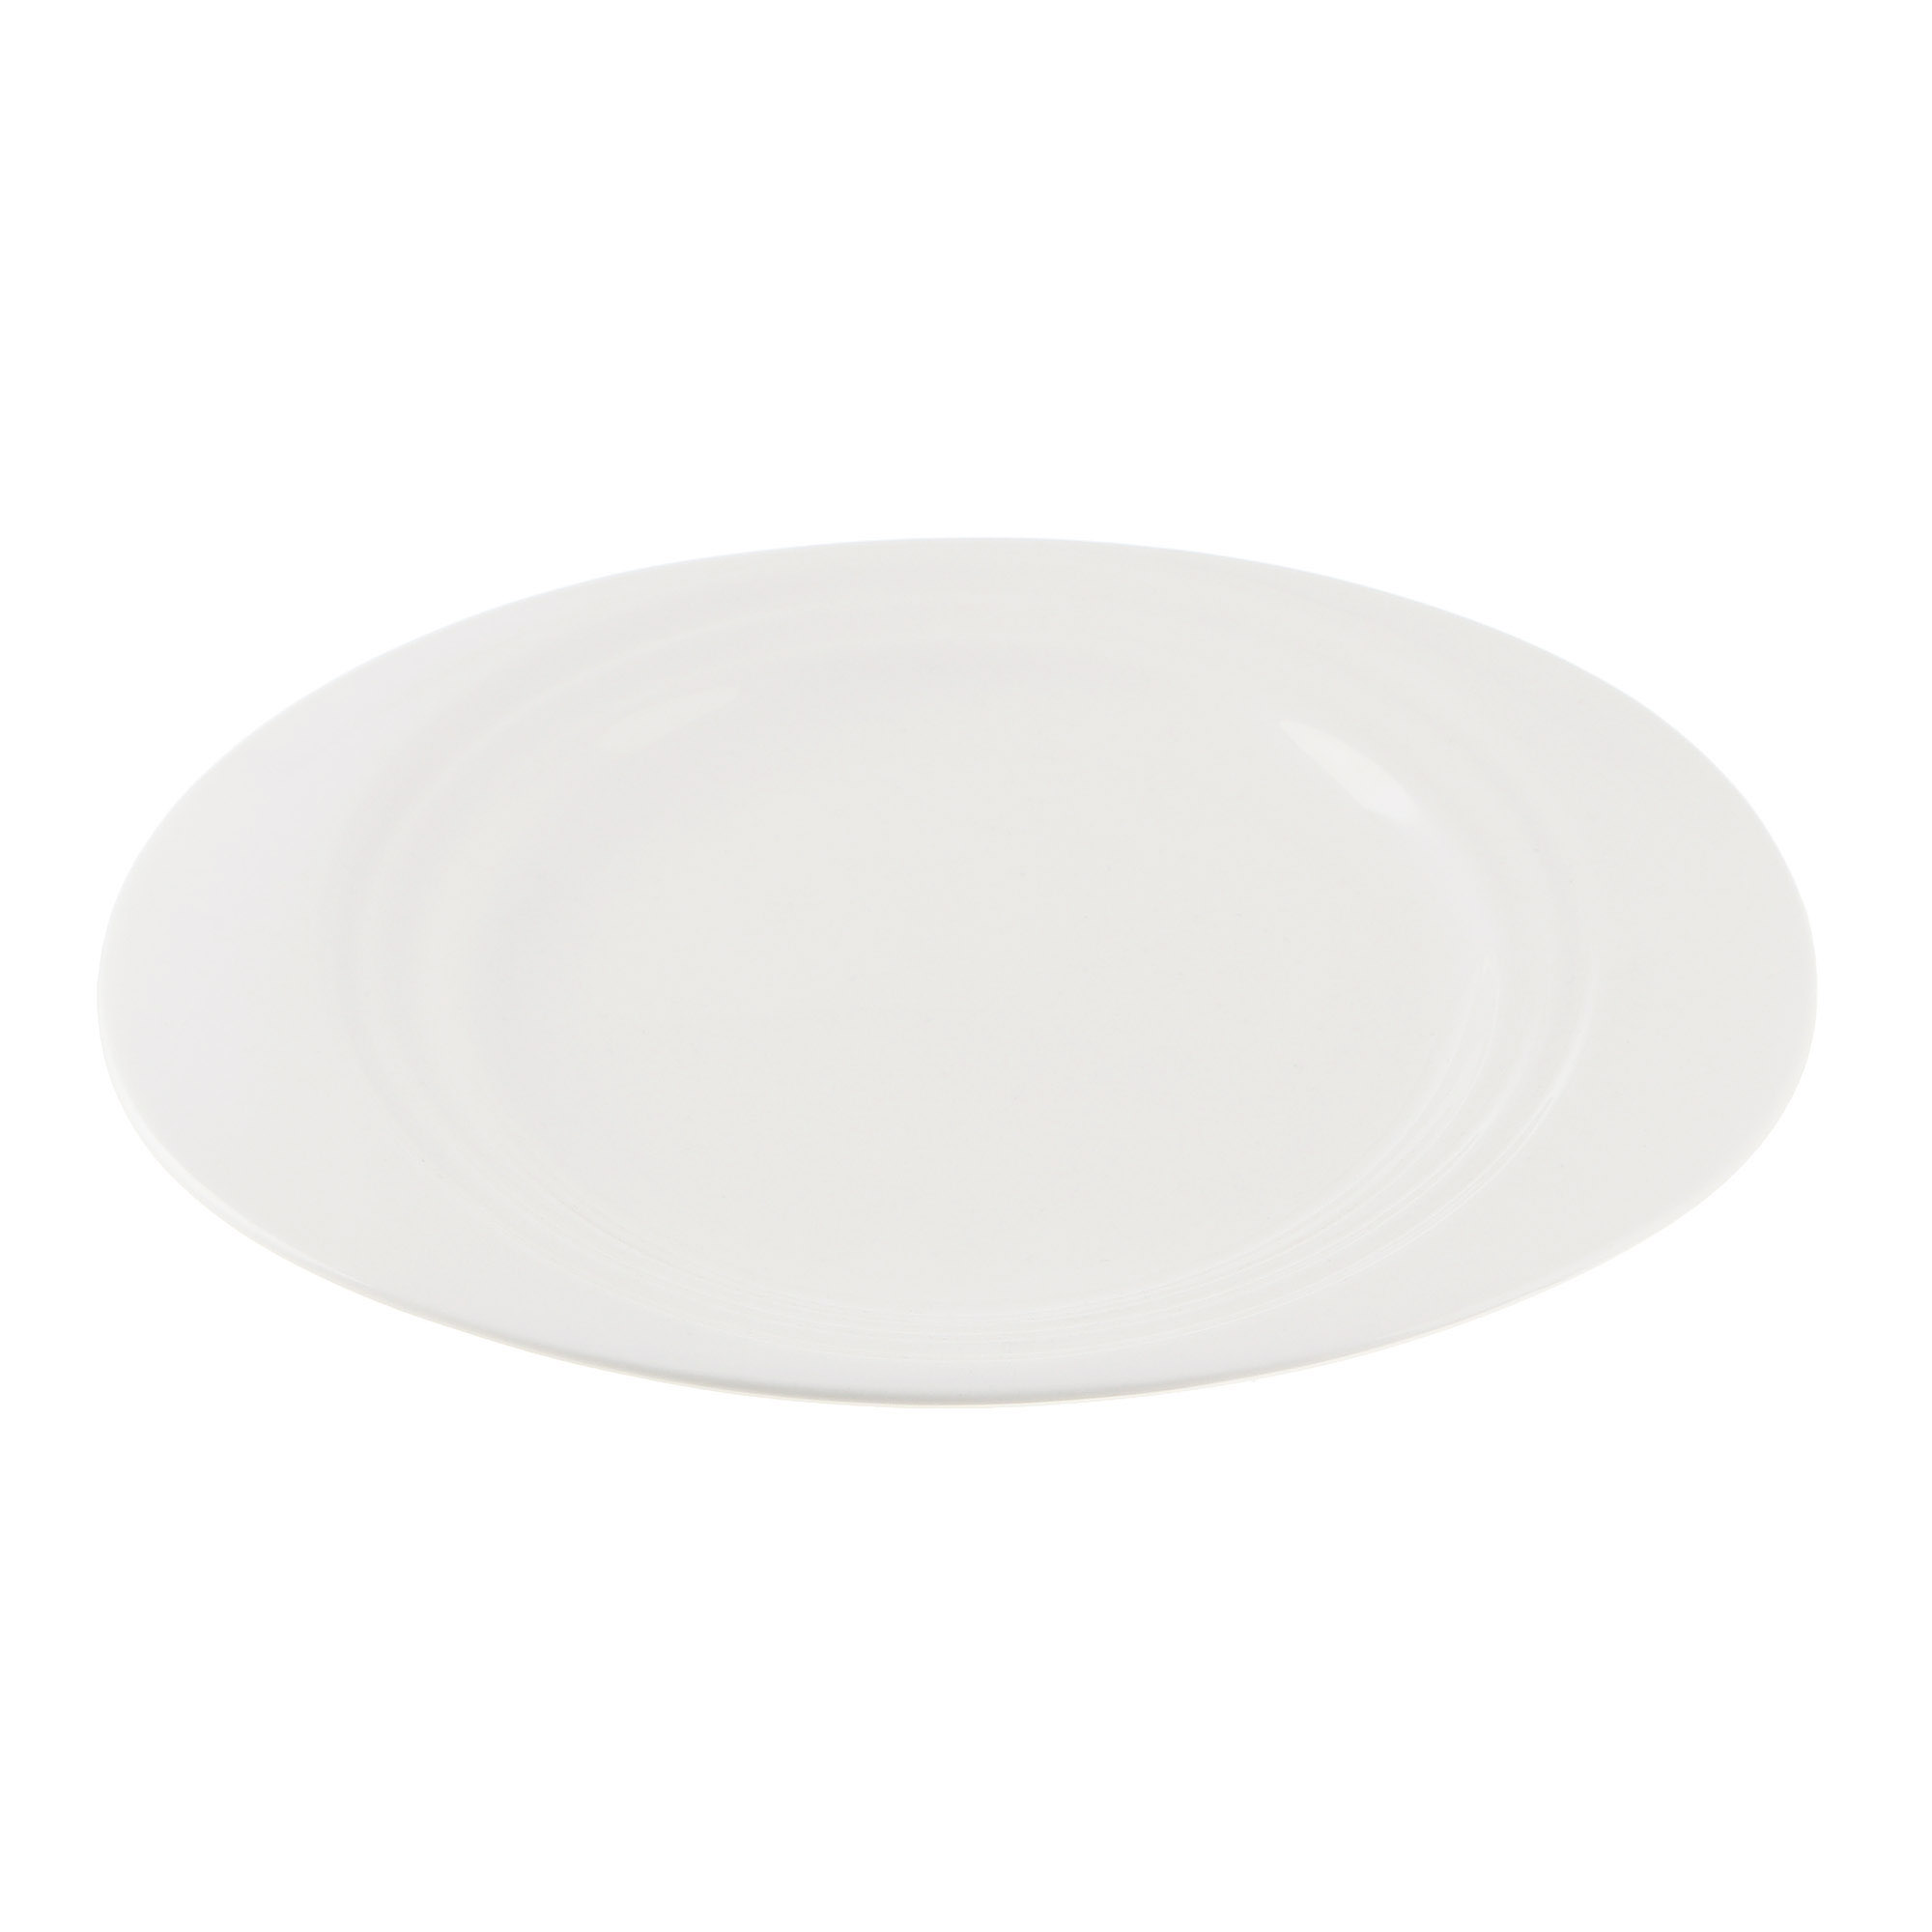 Тарелка Cameo Concentrics фарфор 28,2 см тарелка cameo square rim 30х30 см 710 121